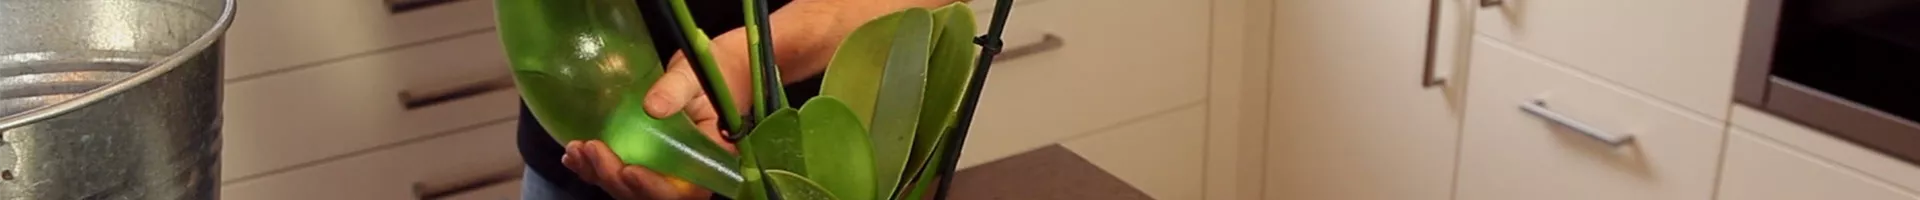 Orchidee - Einpflanzen in ein Gefäß (thumbnail).jpg